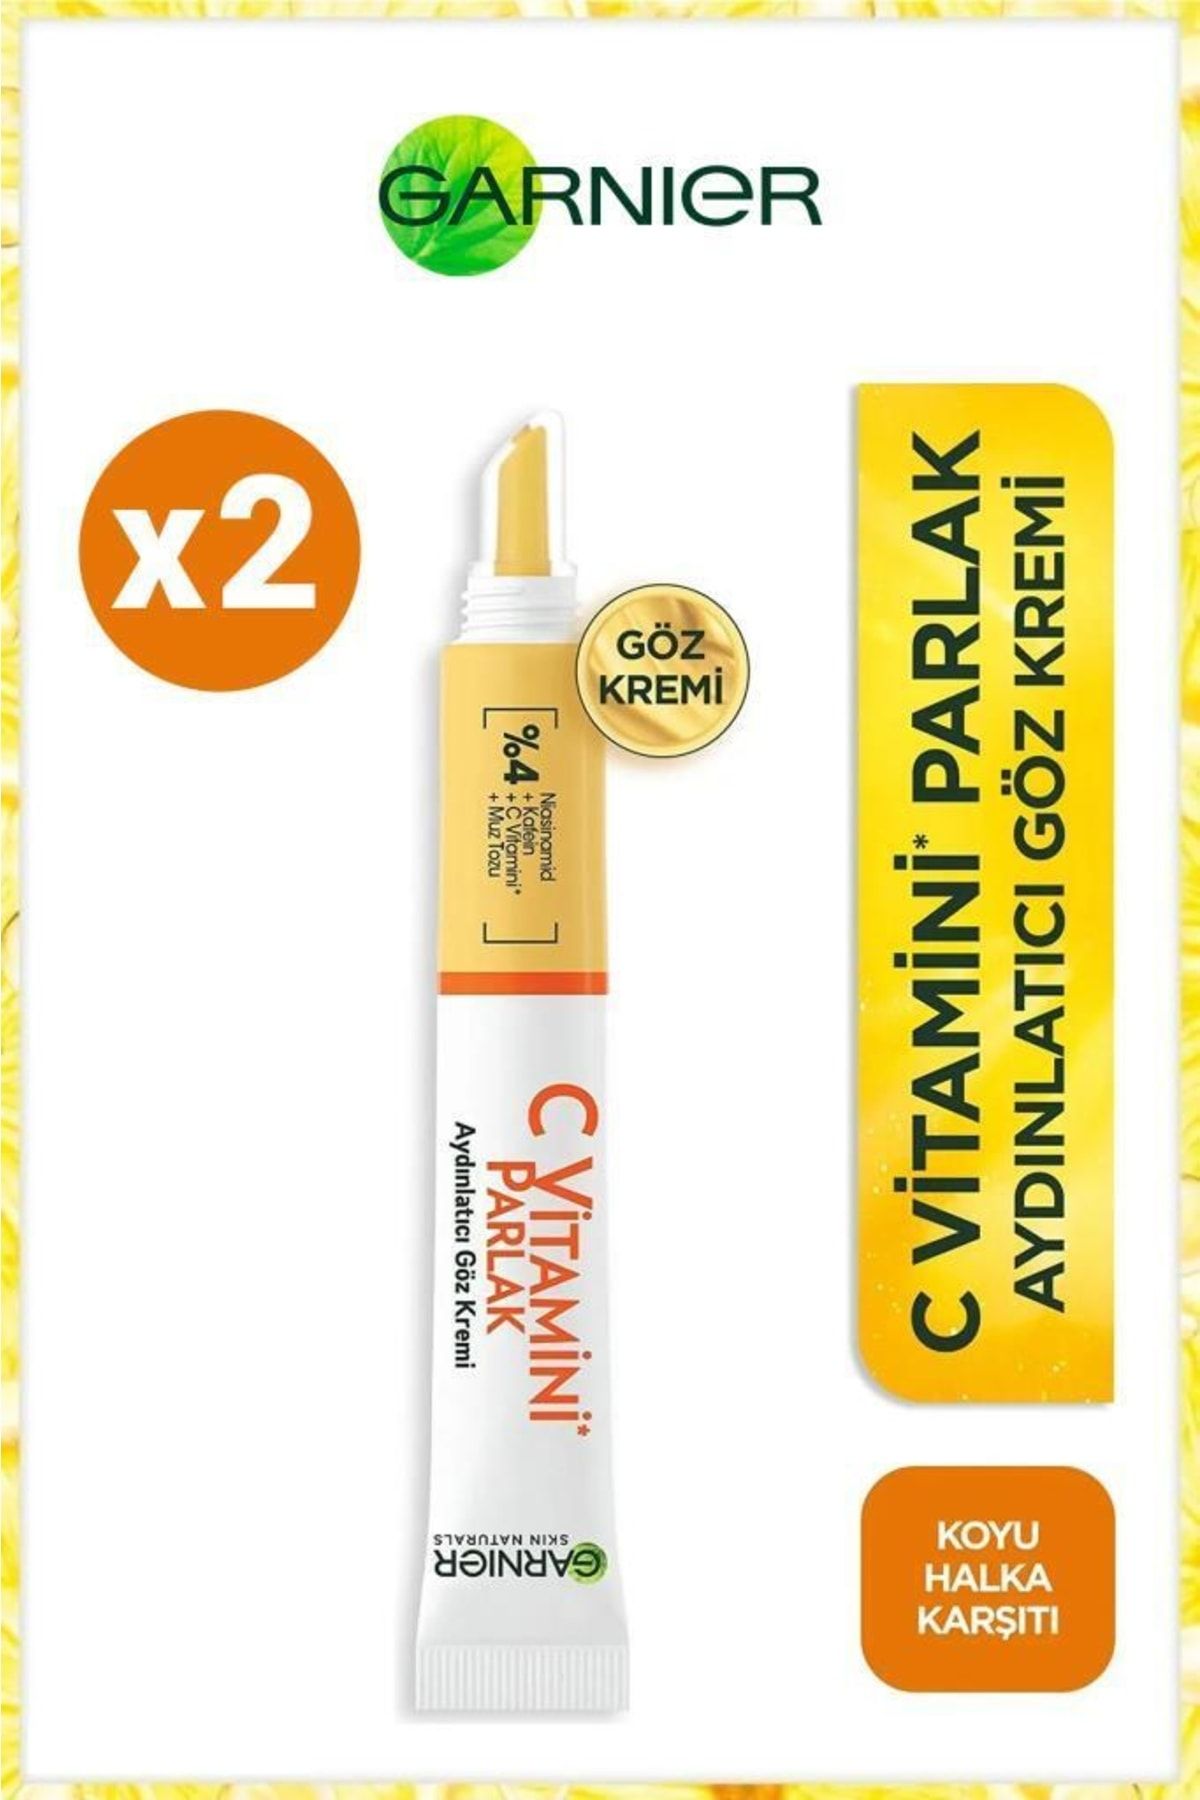 Garnier C Vitaminli Daha Aydınlık Ve Dinlenmiş Göz Çevresi Için Aydınlatıcı Göz Kremi 15ml X2